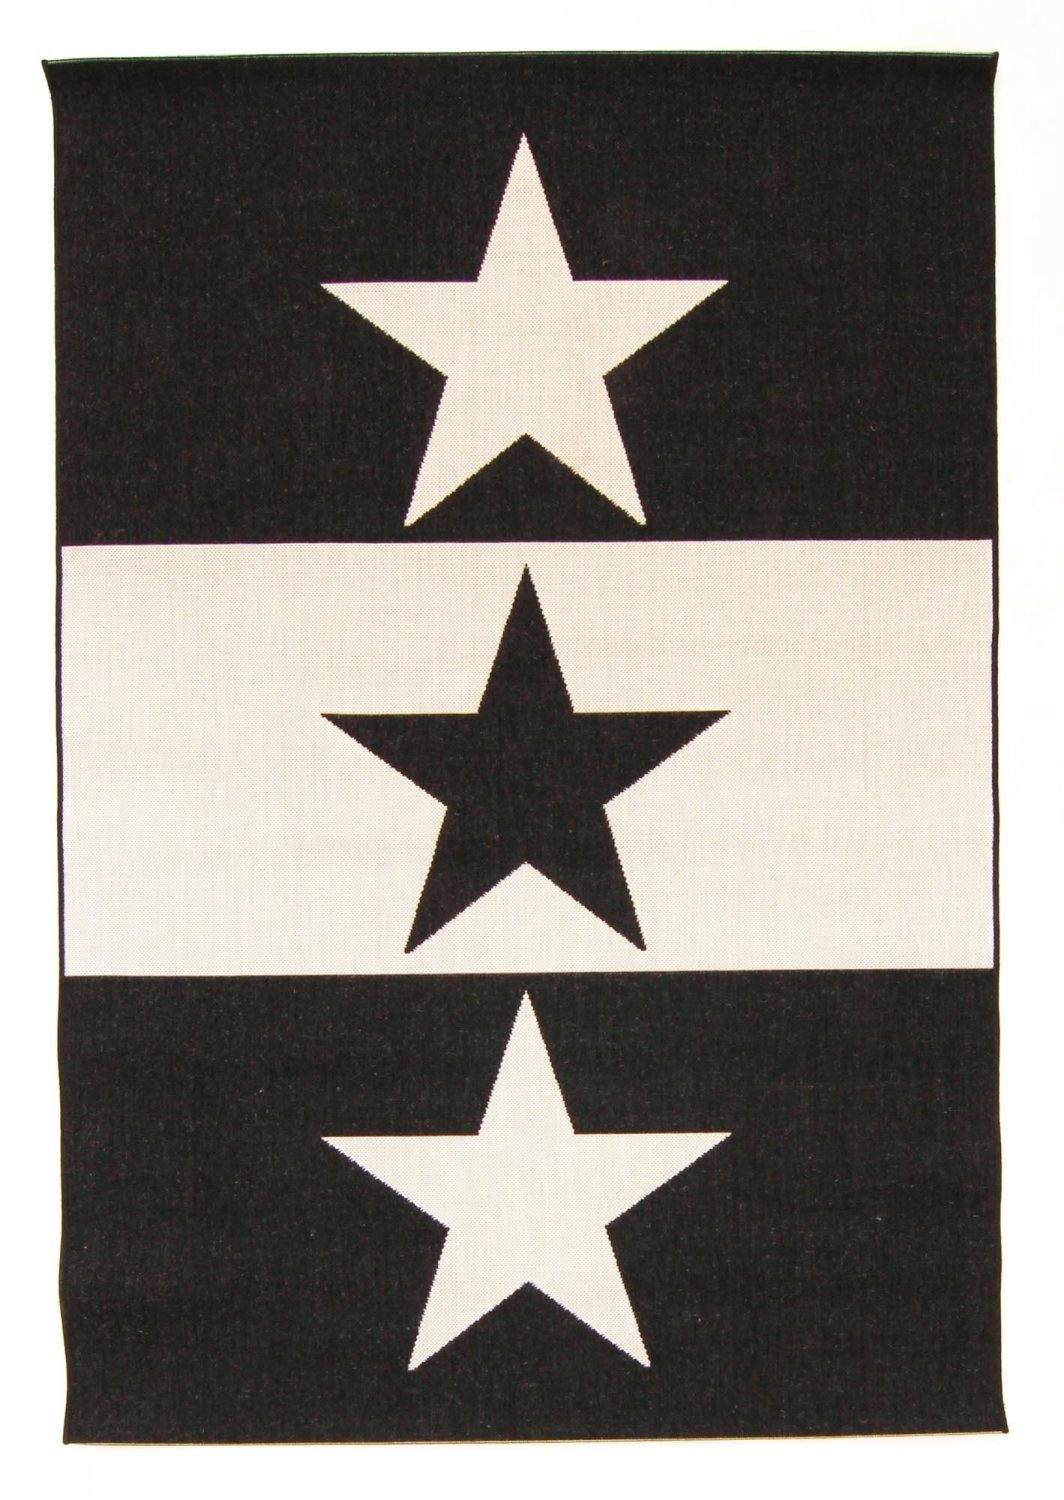 Wilton-Teppich - Three Star (schwarz/weiß)